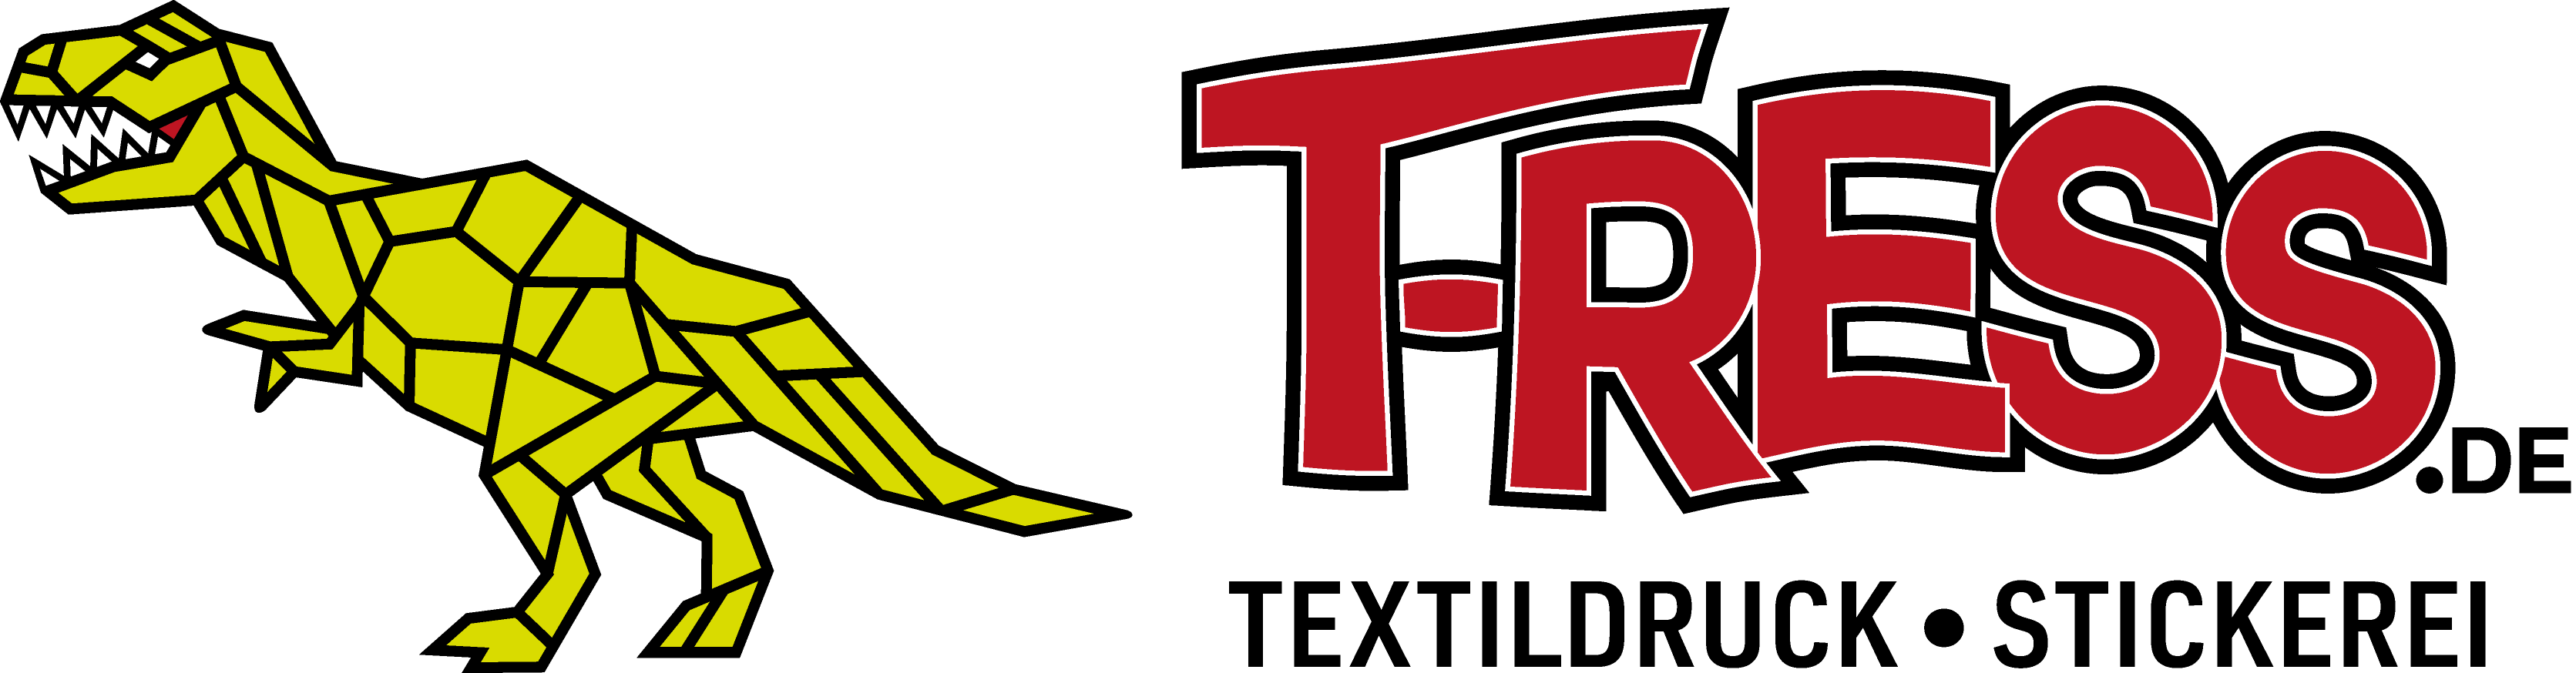 T-RESS Textildruck Stickerei